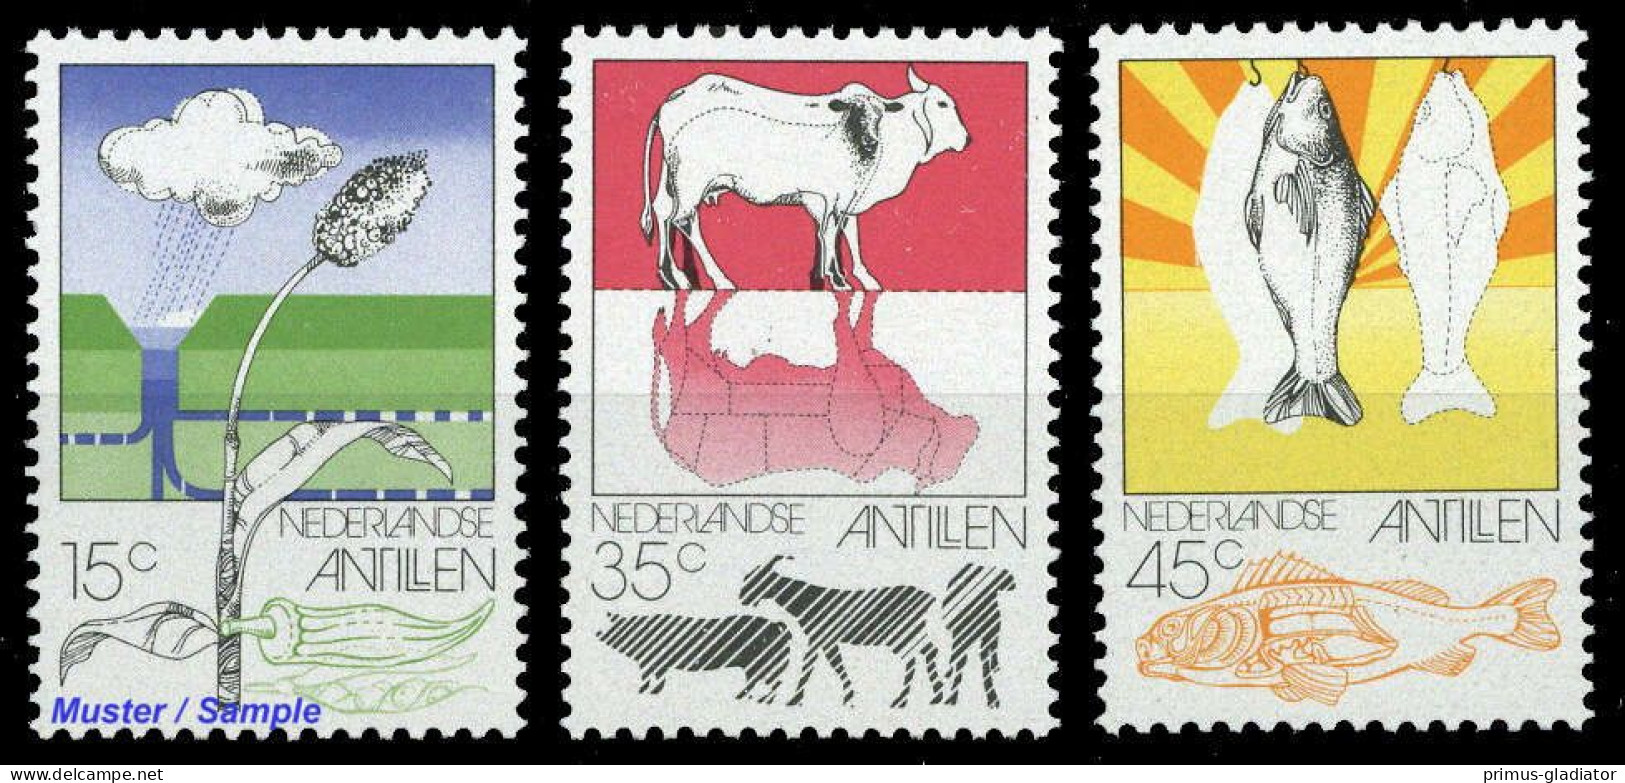 1976, Niederländische Antillen, 314-16, ** - Antillas Holandesas